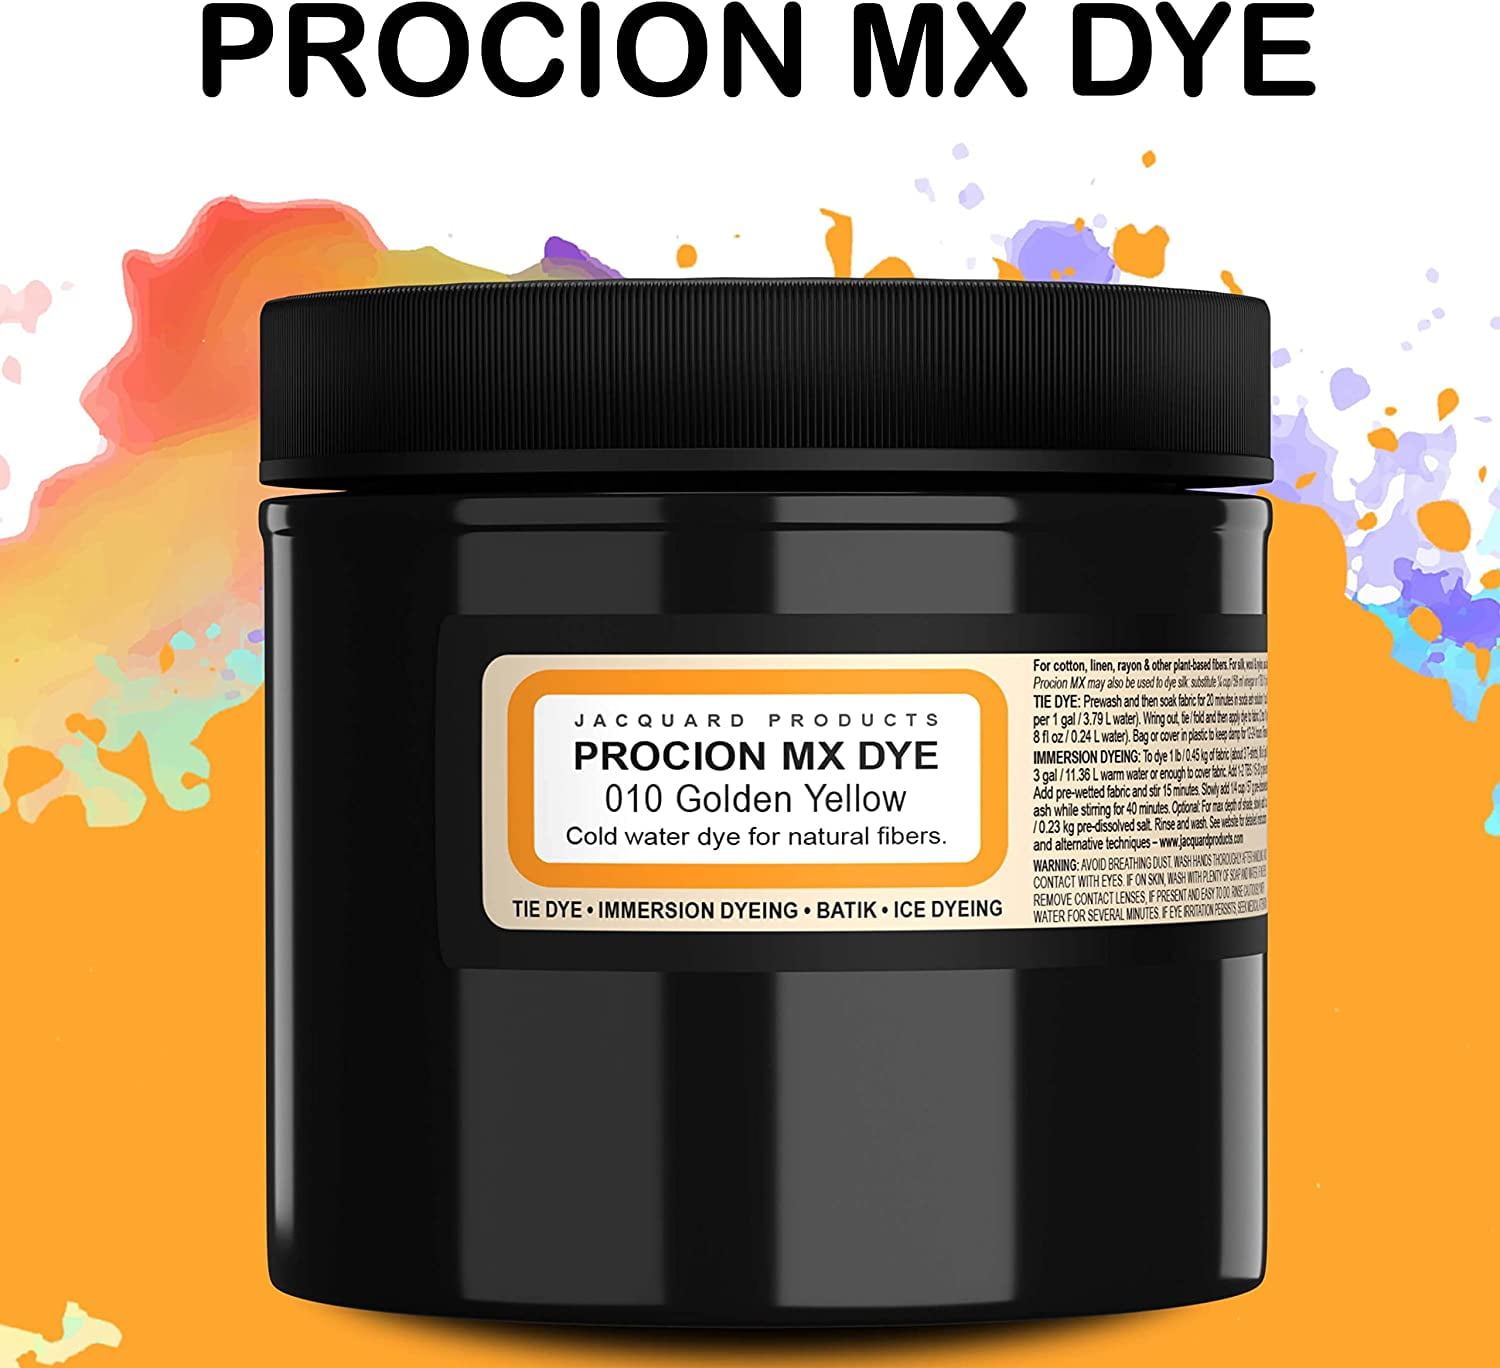 Procion MX Dye Cobalt Blue 240ml by Jacquard. Best for sale online